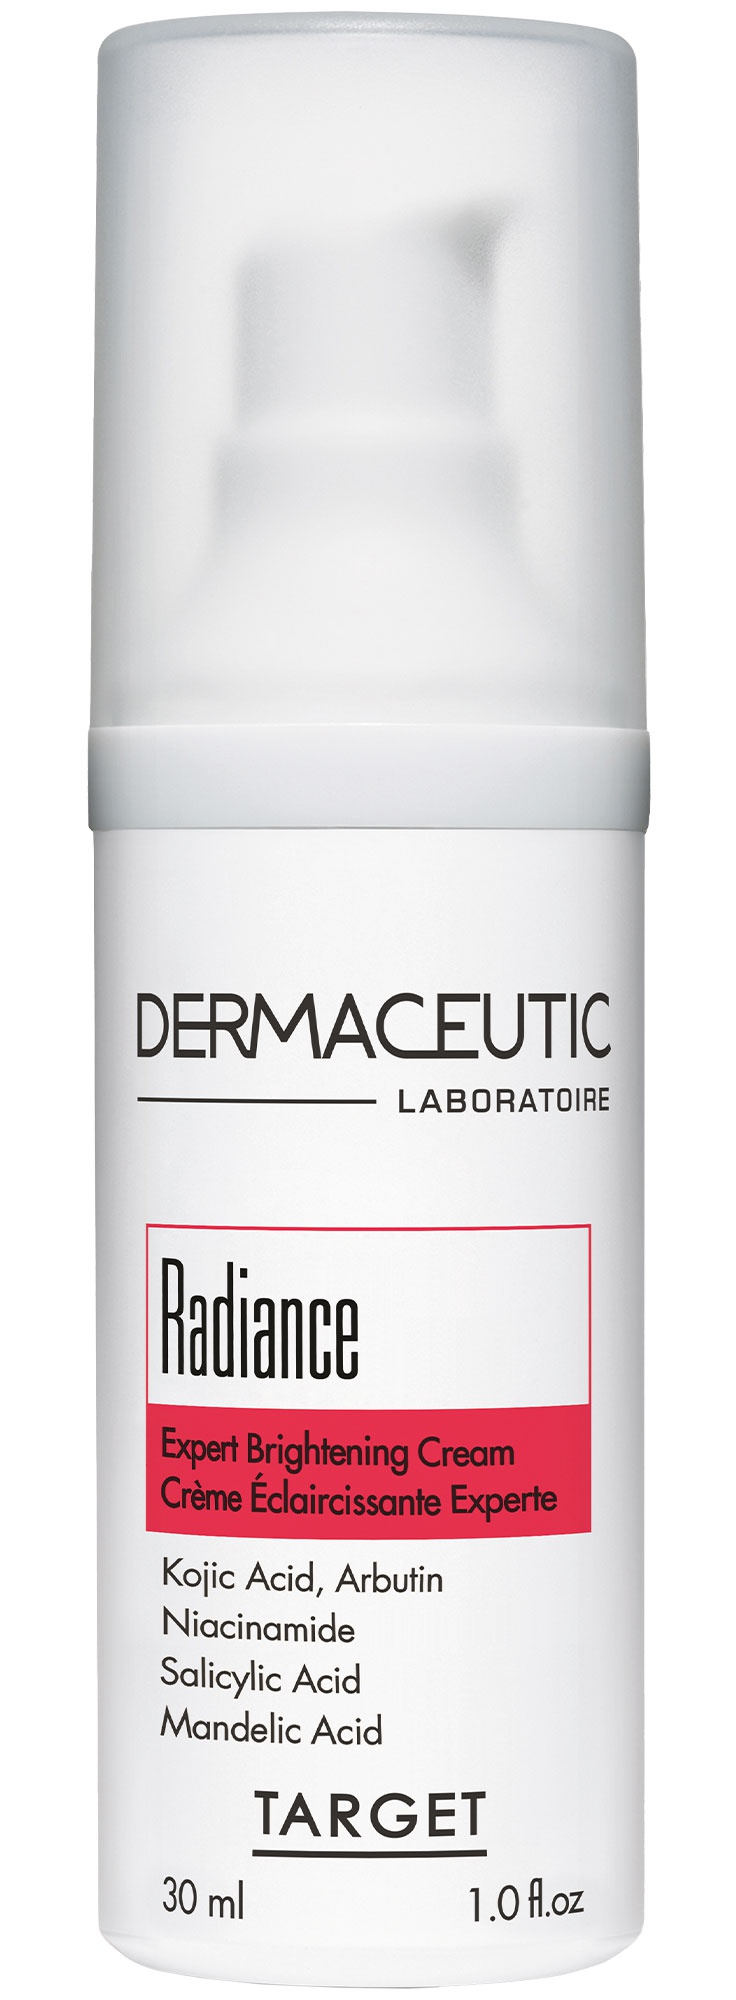 Dermaceutic Radiance Expert Brightening Cream